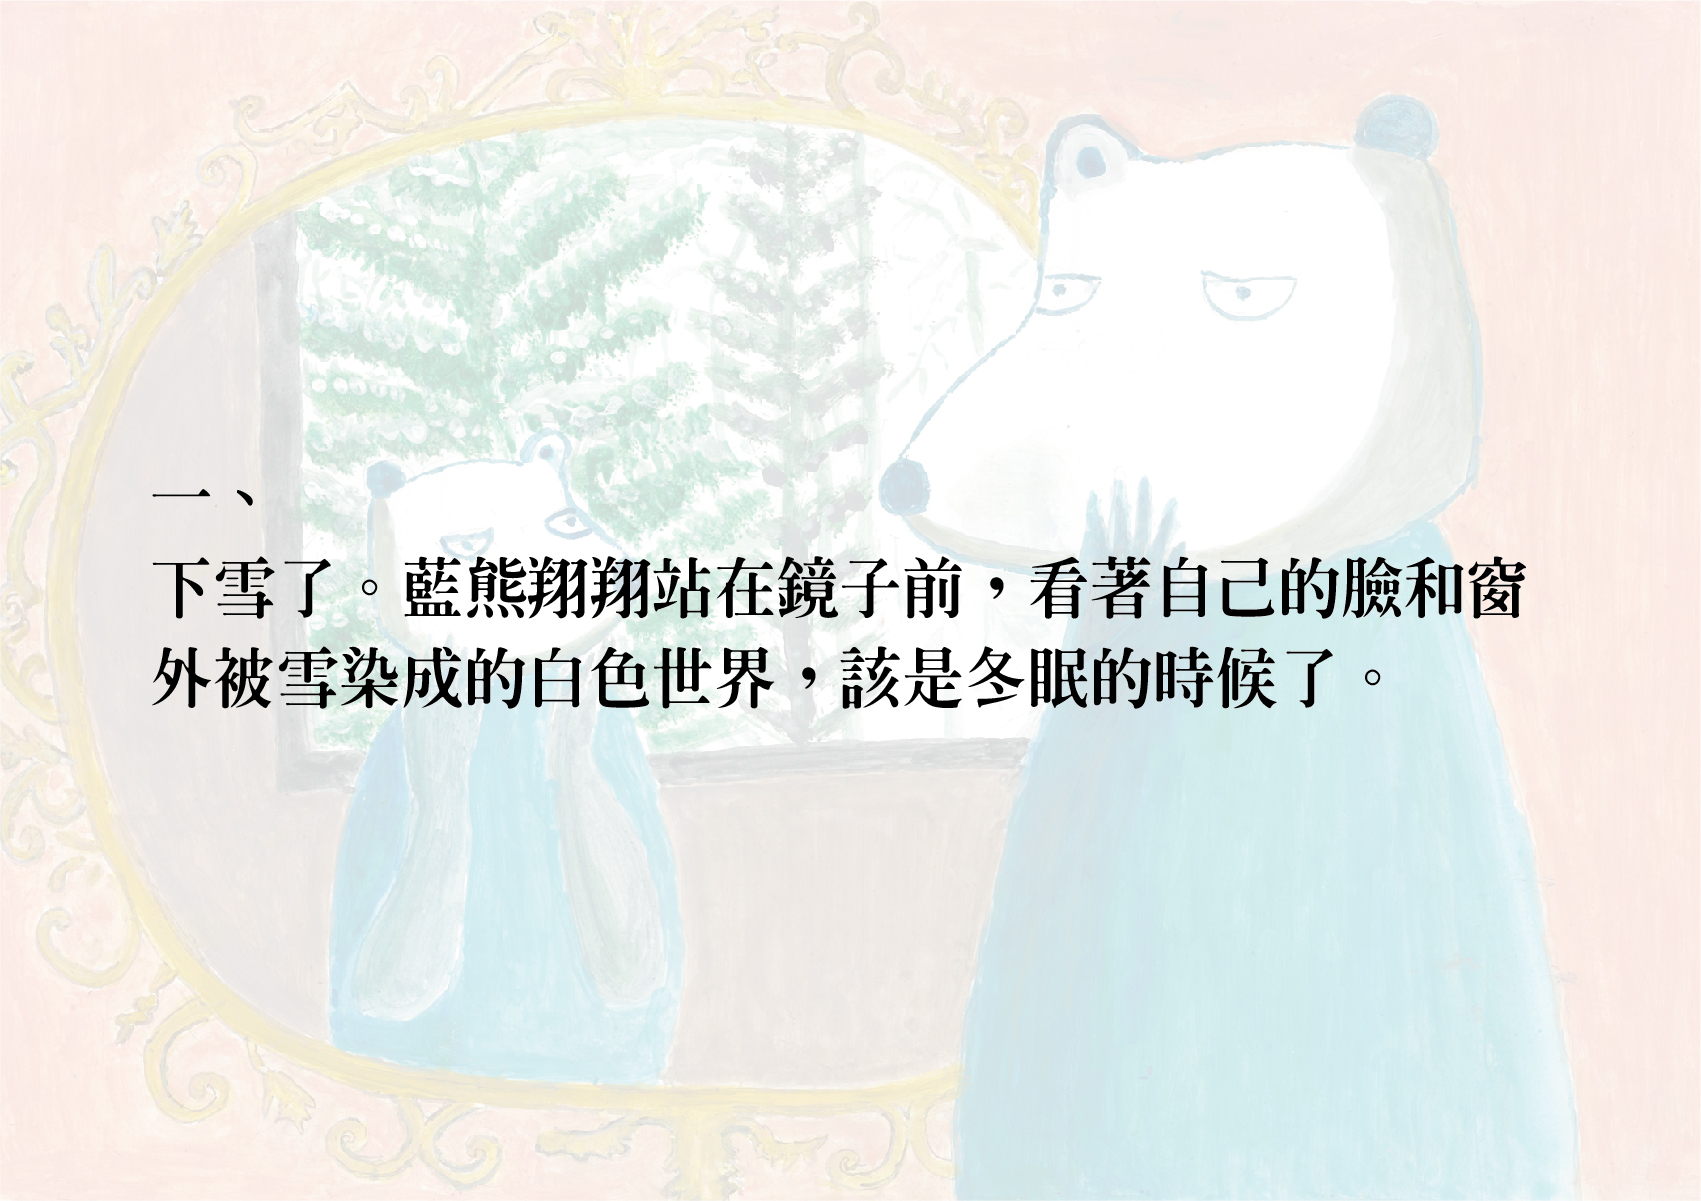 02.圖畫書類-大專社會組-第二名-施慧英〈藍熊〉_03